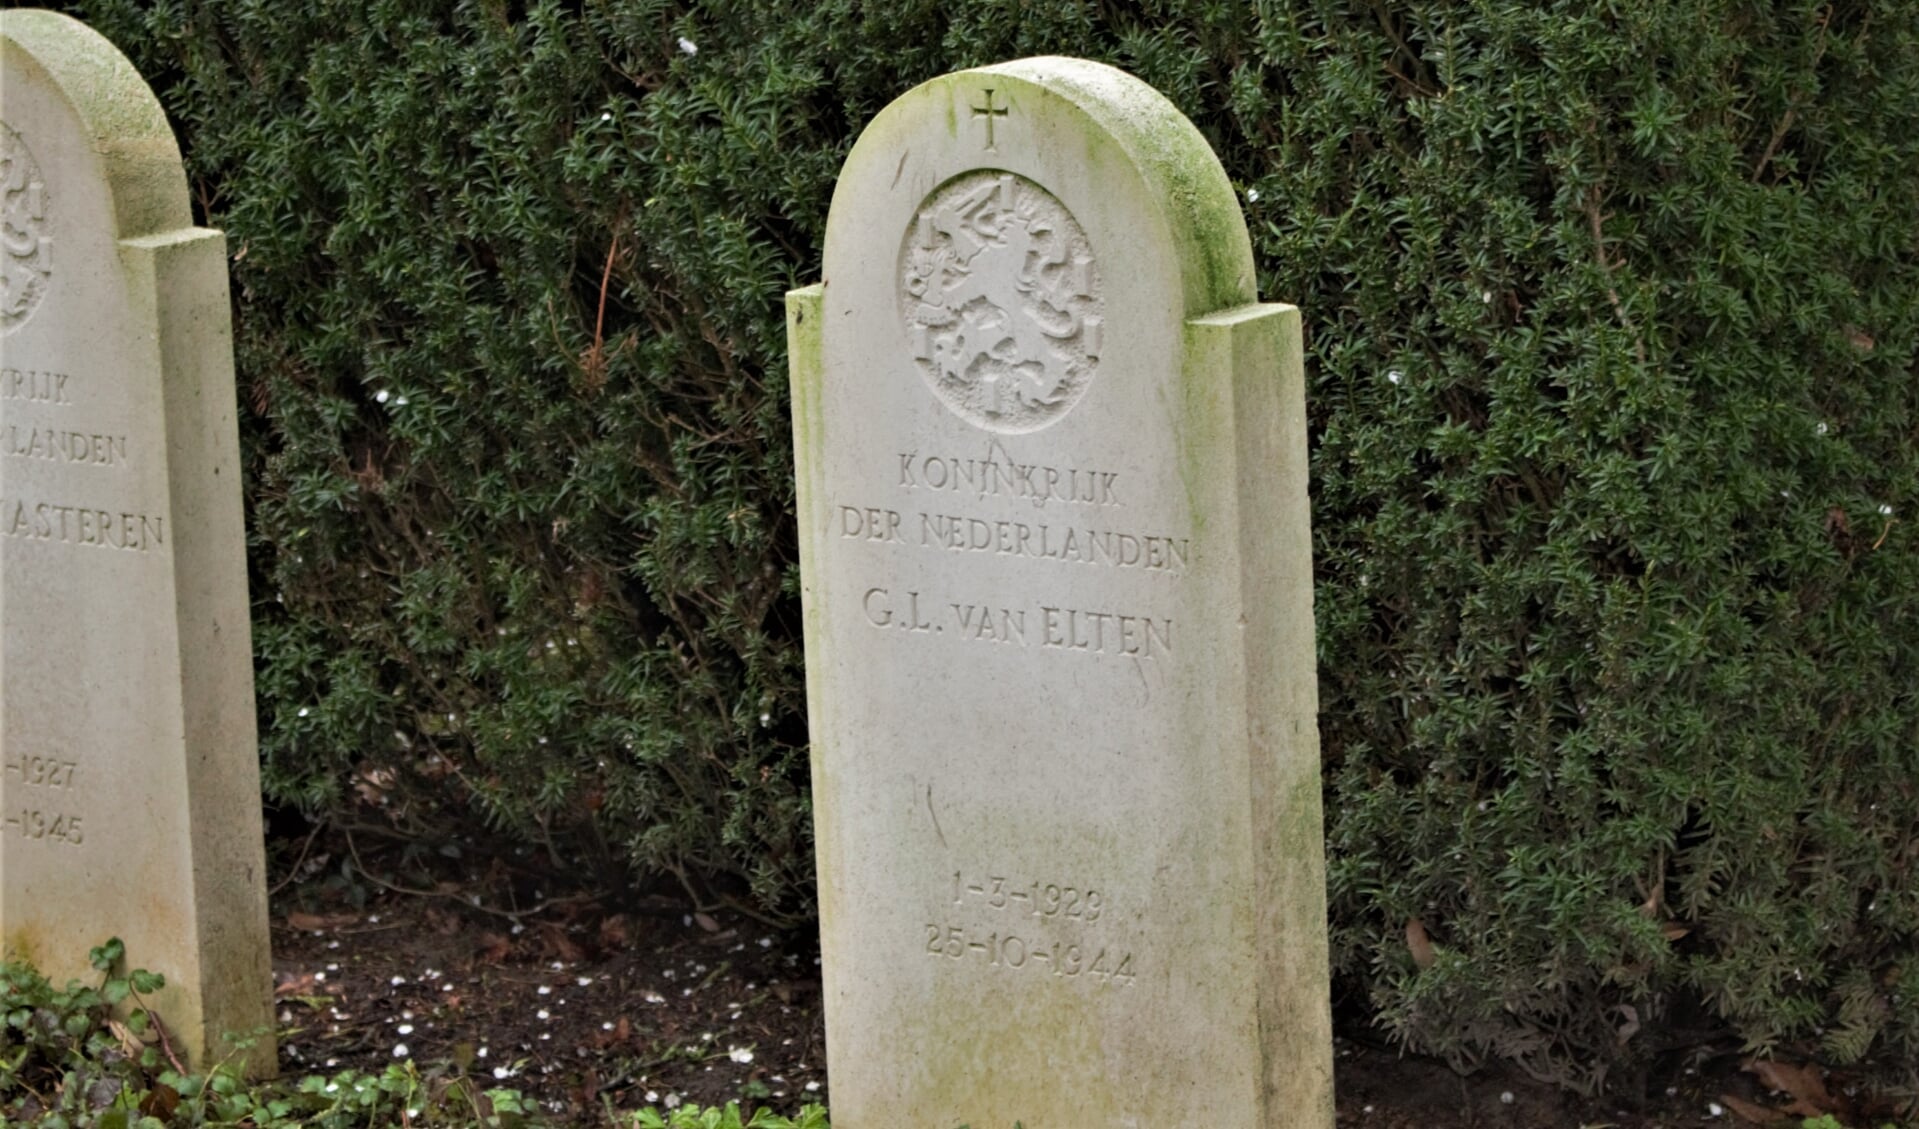 De vijftienjarige Gijs van Elten stierf door een kogel van een sluipschutter. Hij ligt begraven op het ereveld van de Oorlogsgravenstichting.